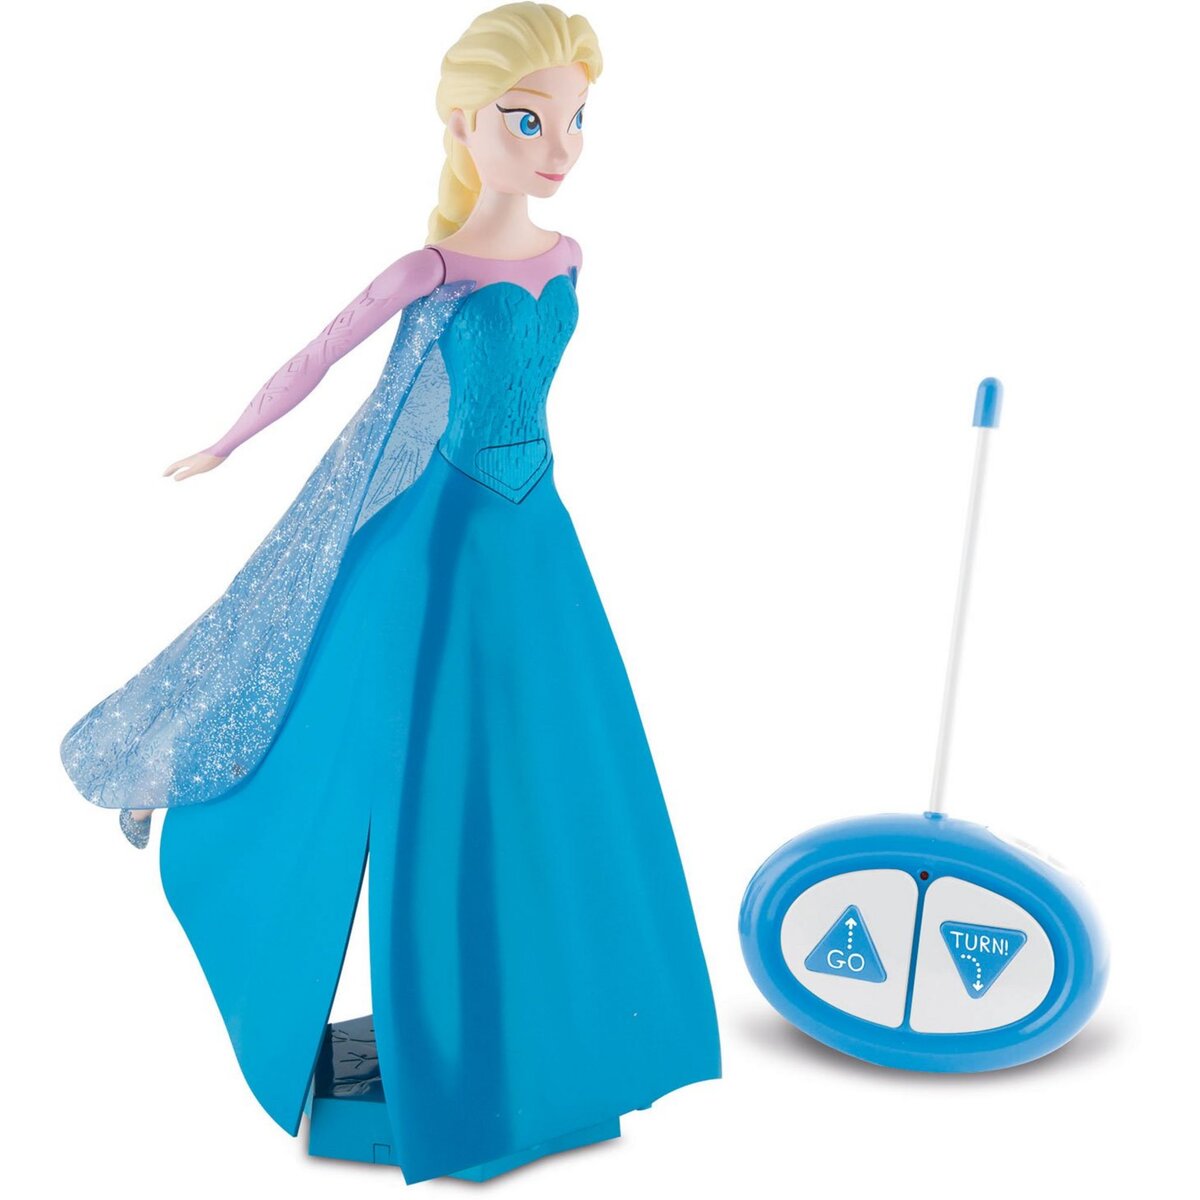 IMC TOYS Elsa patine et chante radiocommandée